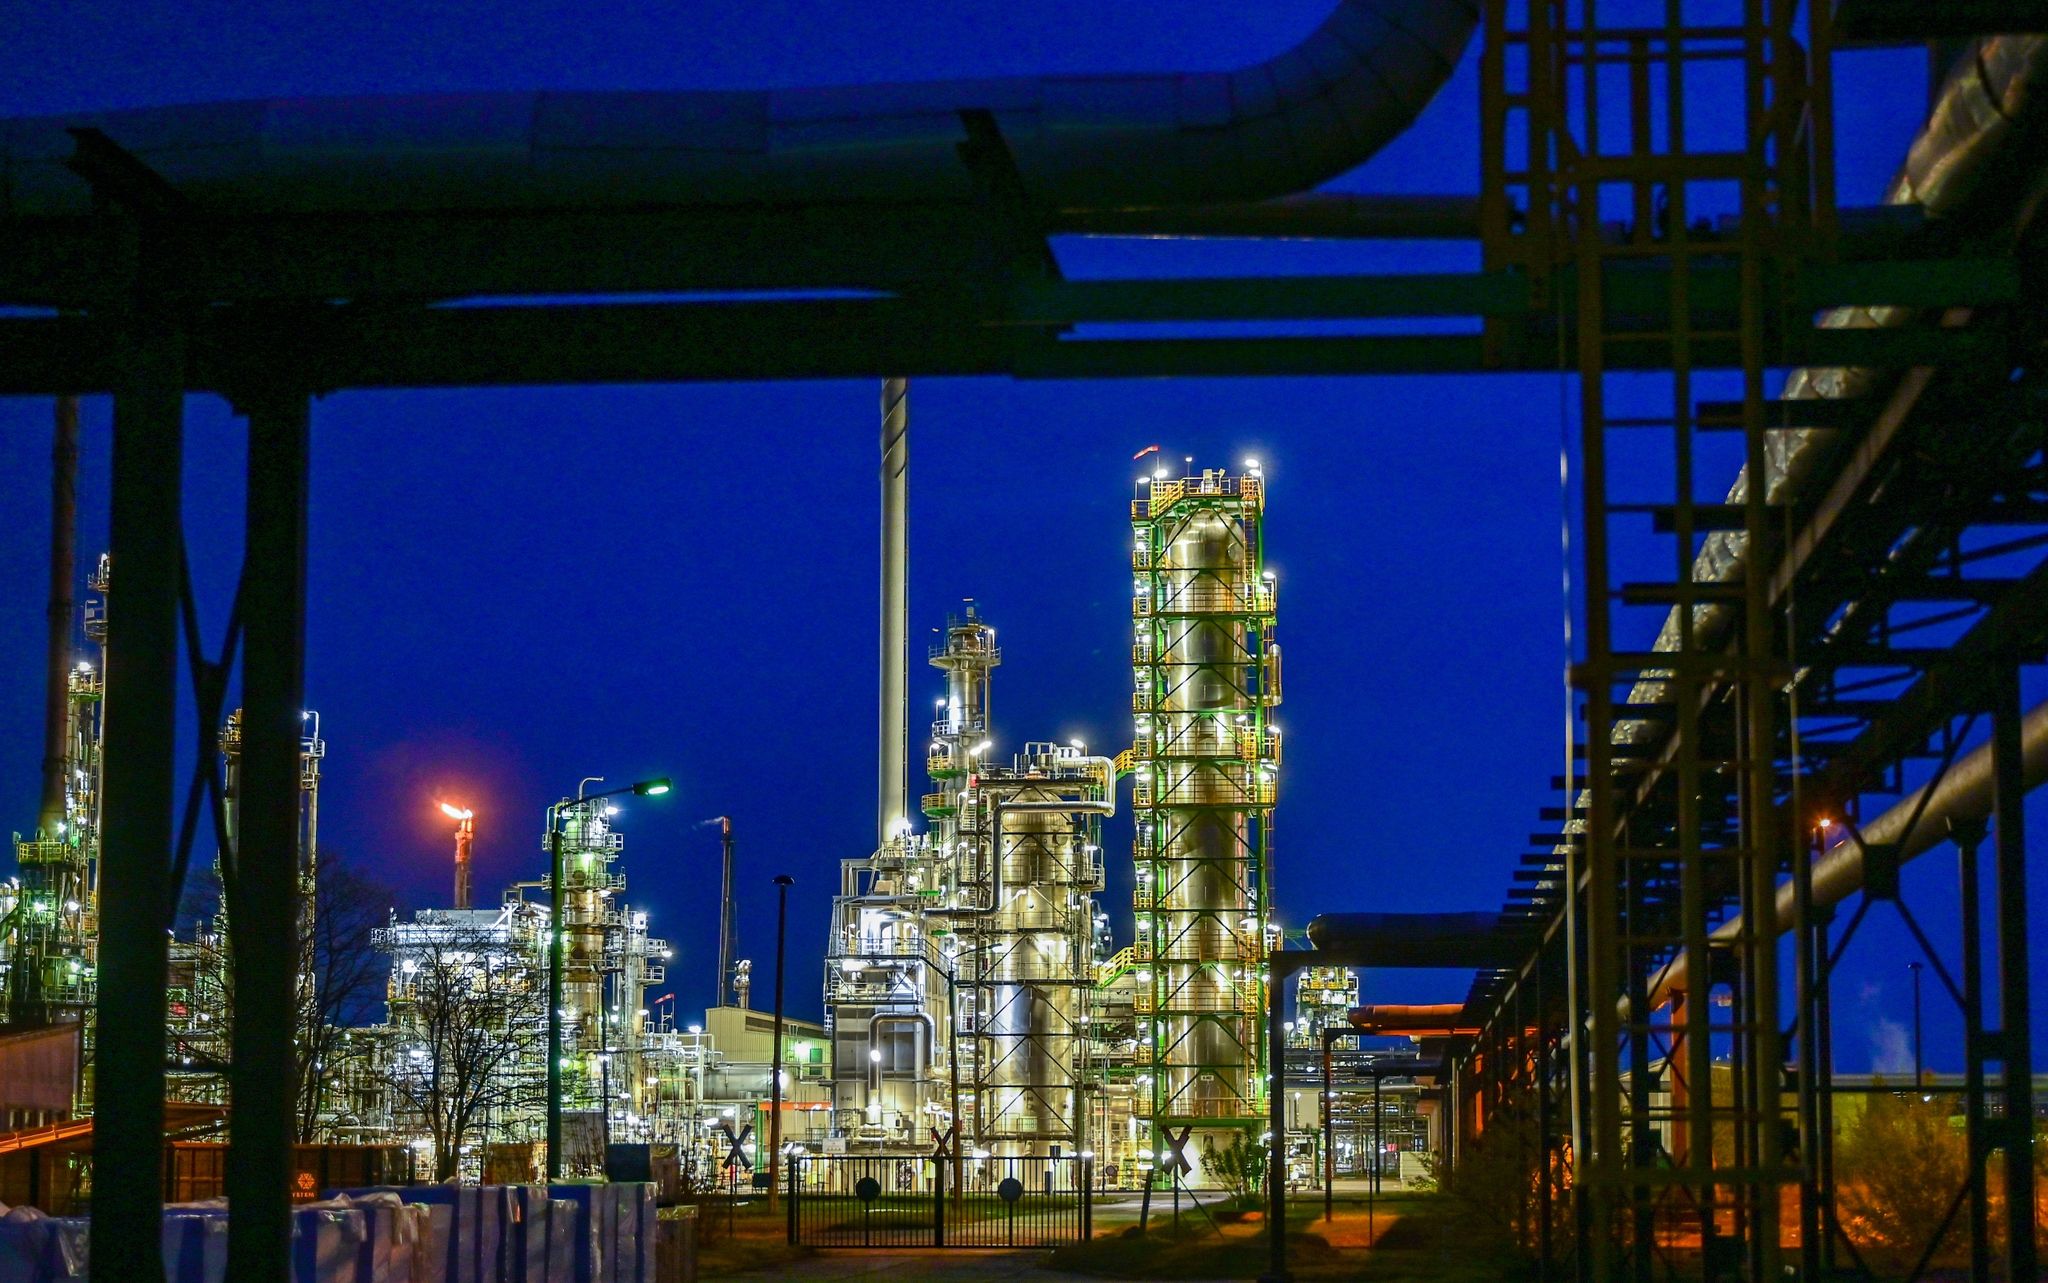 Die Anlagen der Erdölraffinerie auf dem Industriegelände der PCK-Raffinerie GmbH sind abends beleuchtet.